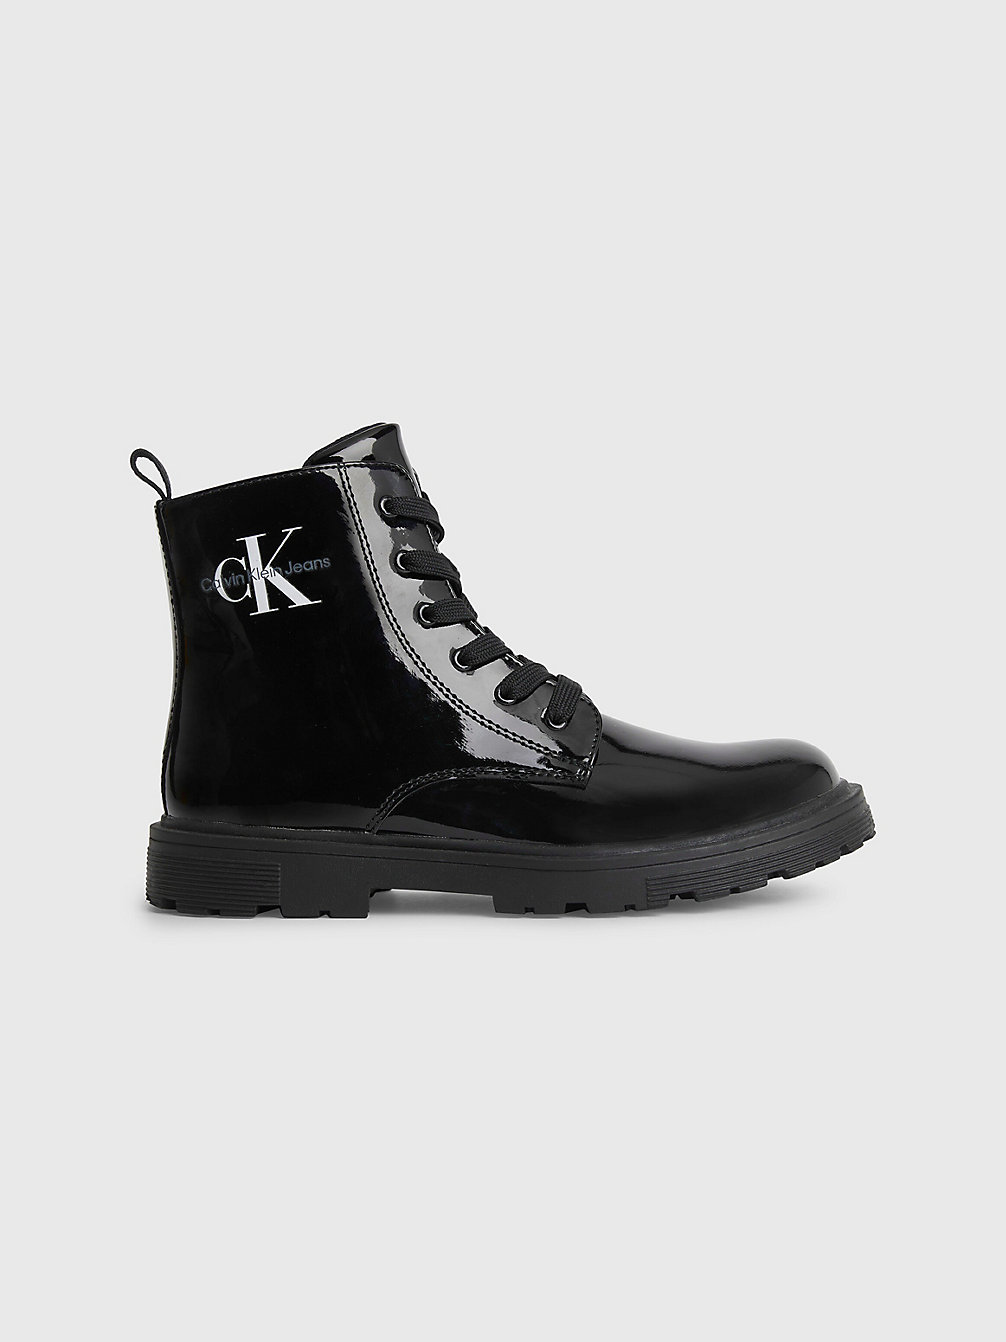 BLACK Kinder-Boots Aus Recyceltem Lackleder undefined girls Calvin Klein